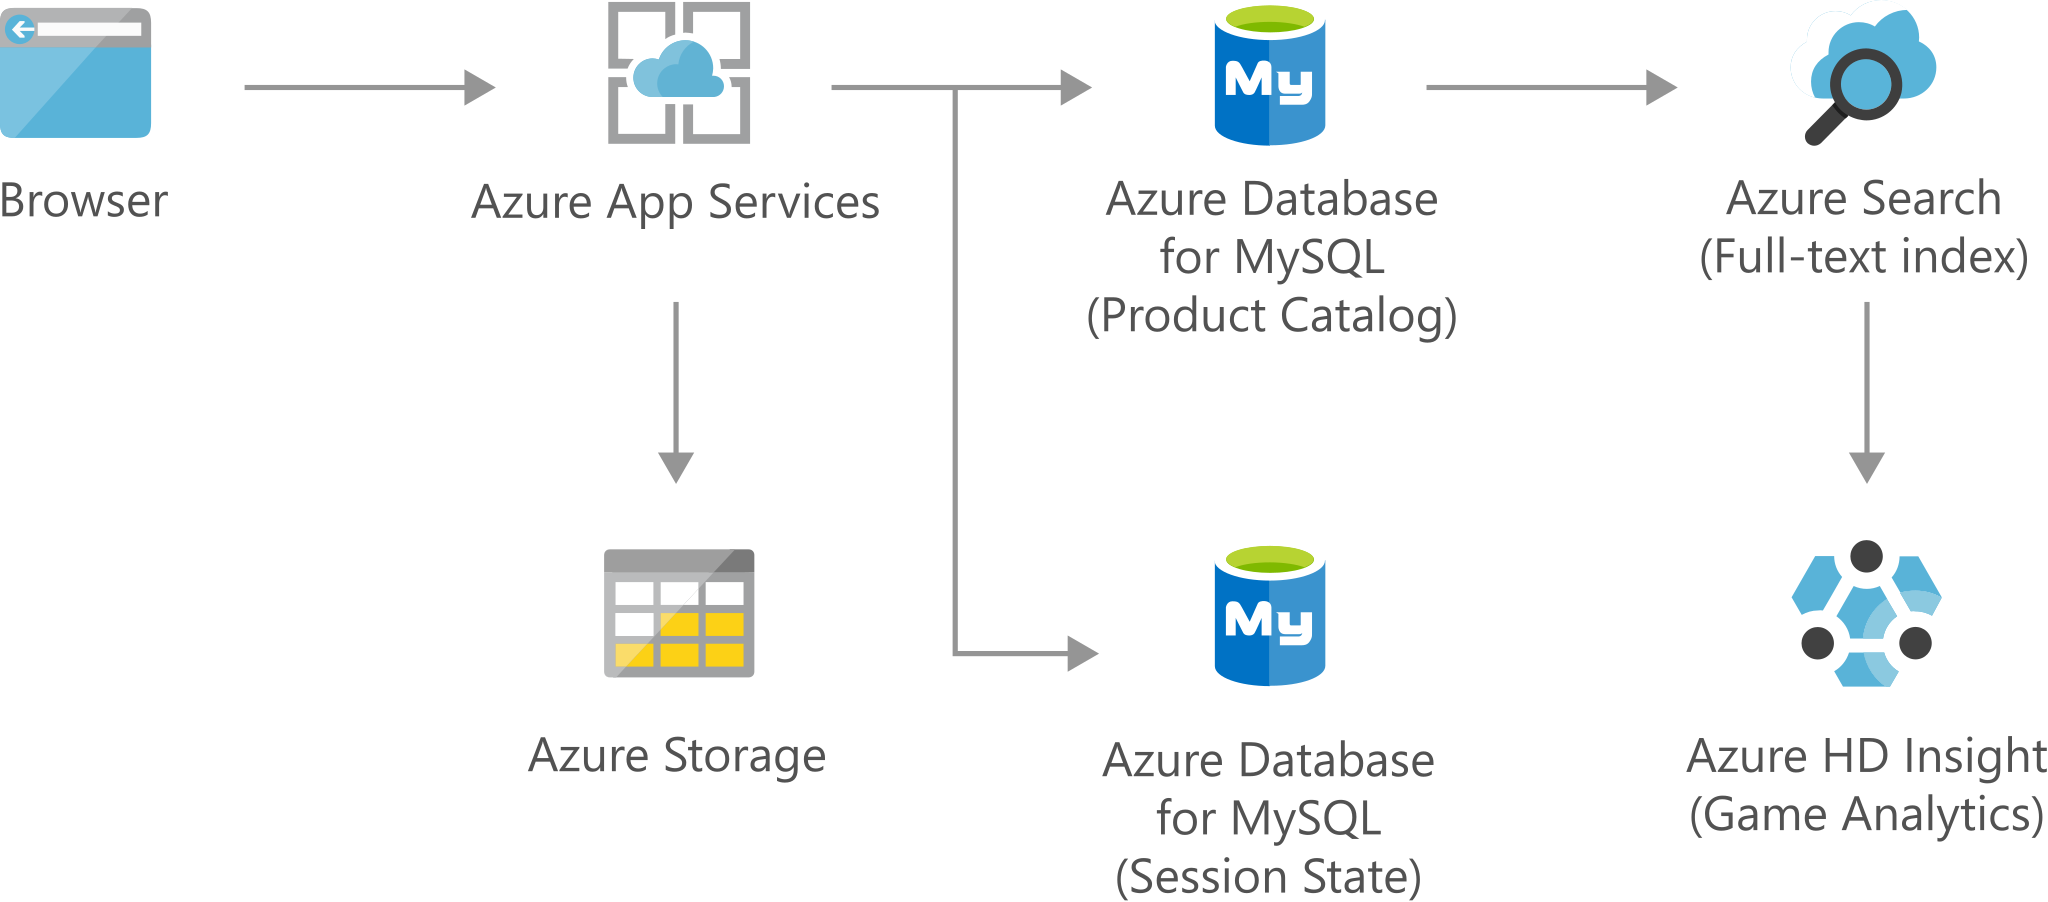 データが Azure App Services に入り、Azure Storage とデータベースに送られ、Azure Search を経て、Azure H D Insight に入る様子を示したアーキテクチャ図。